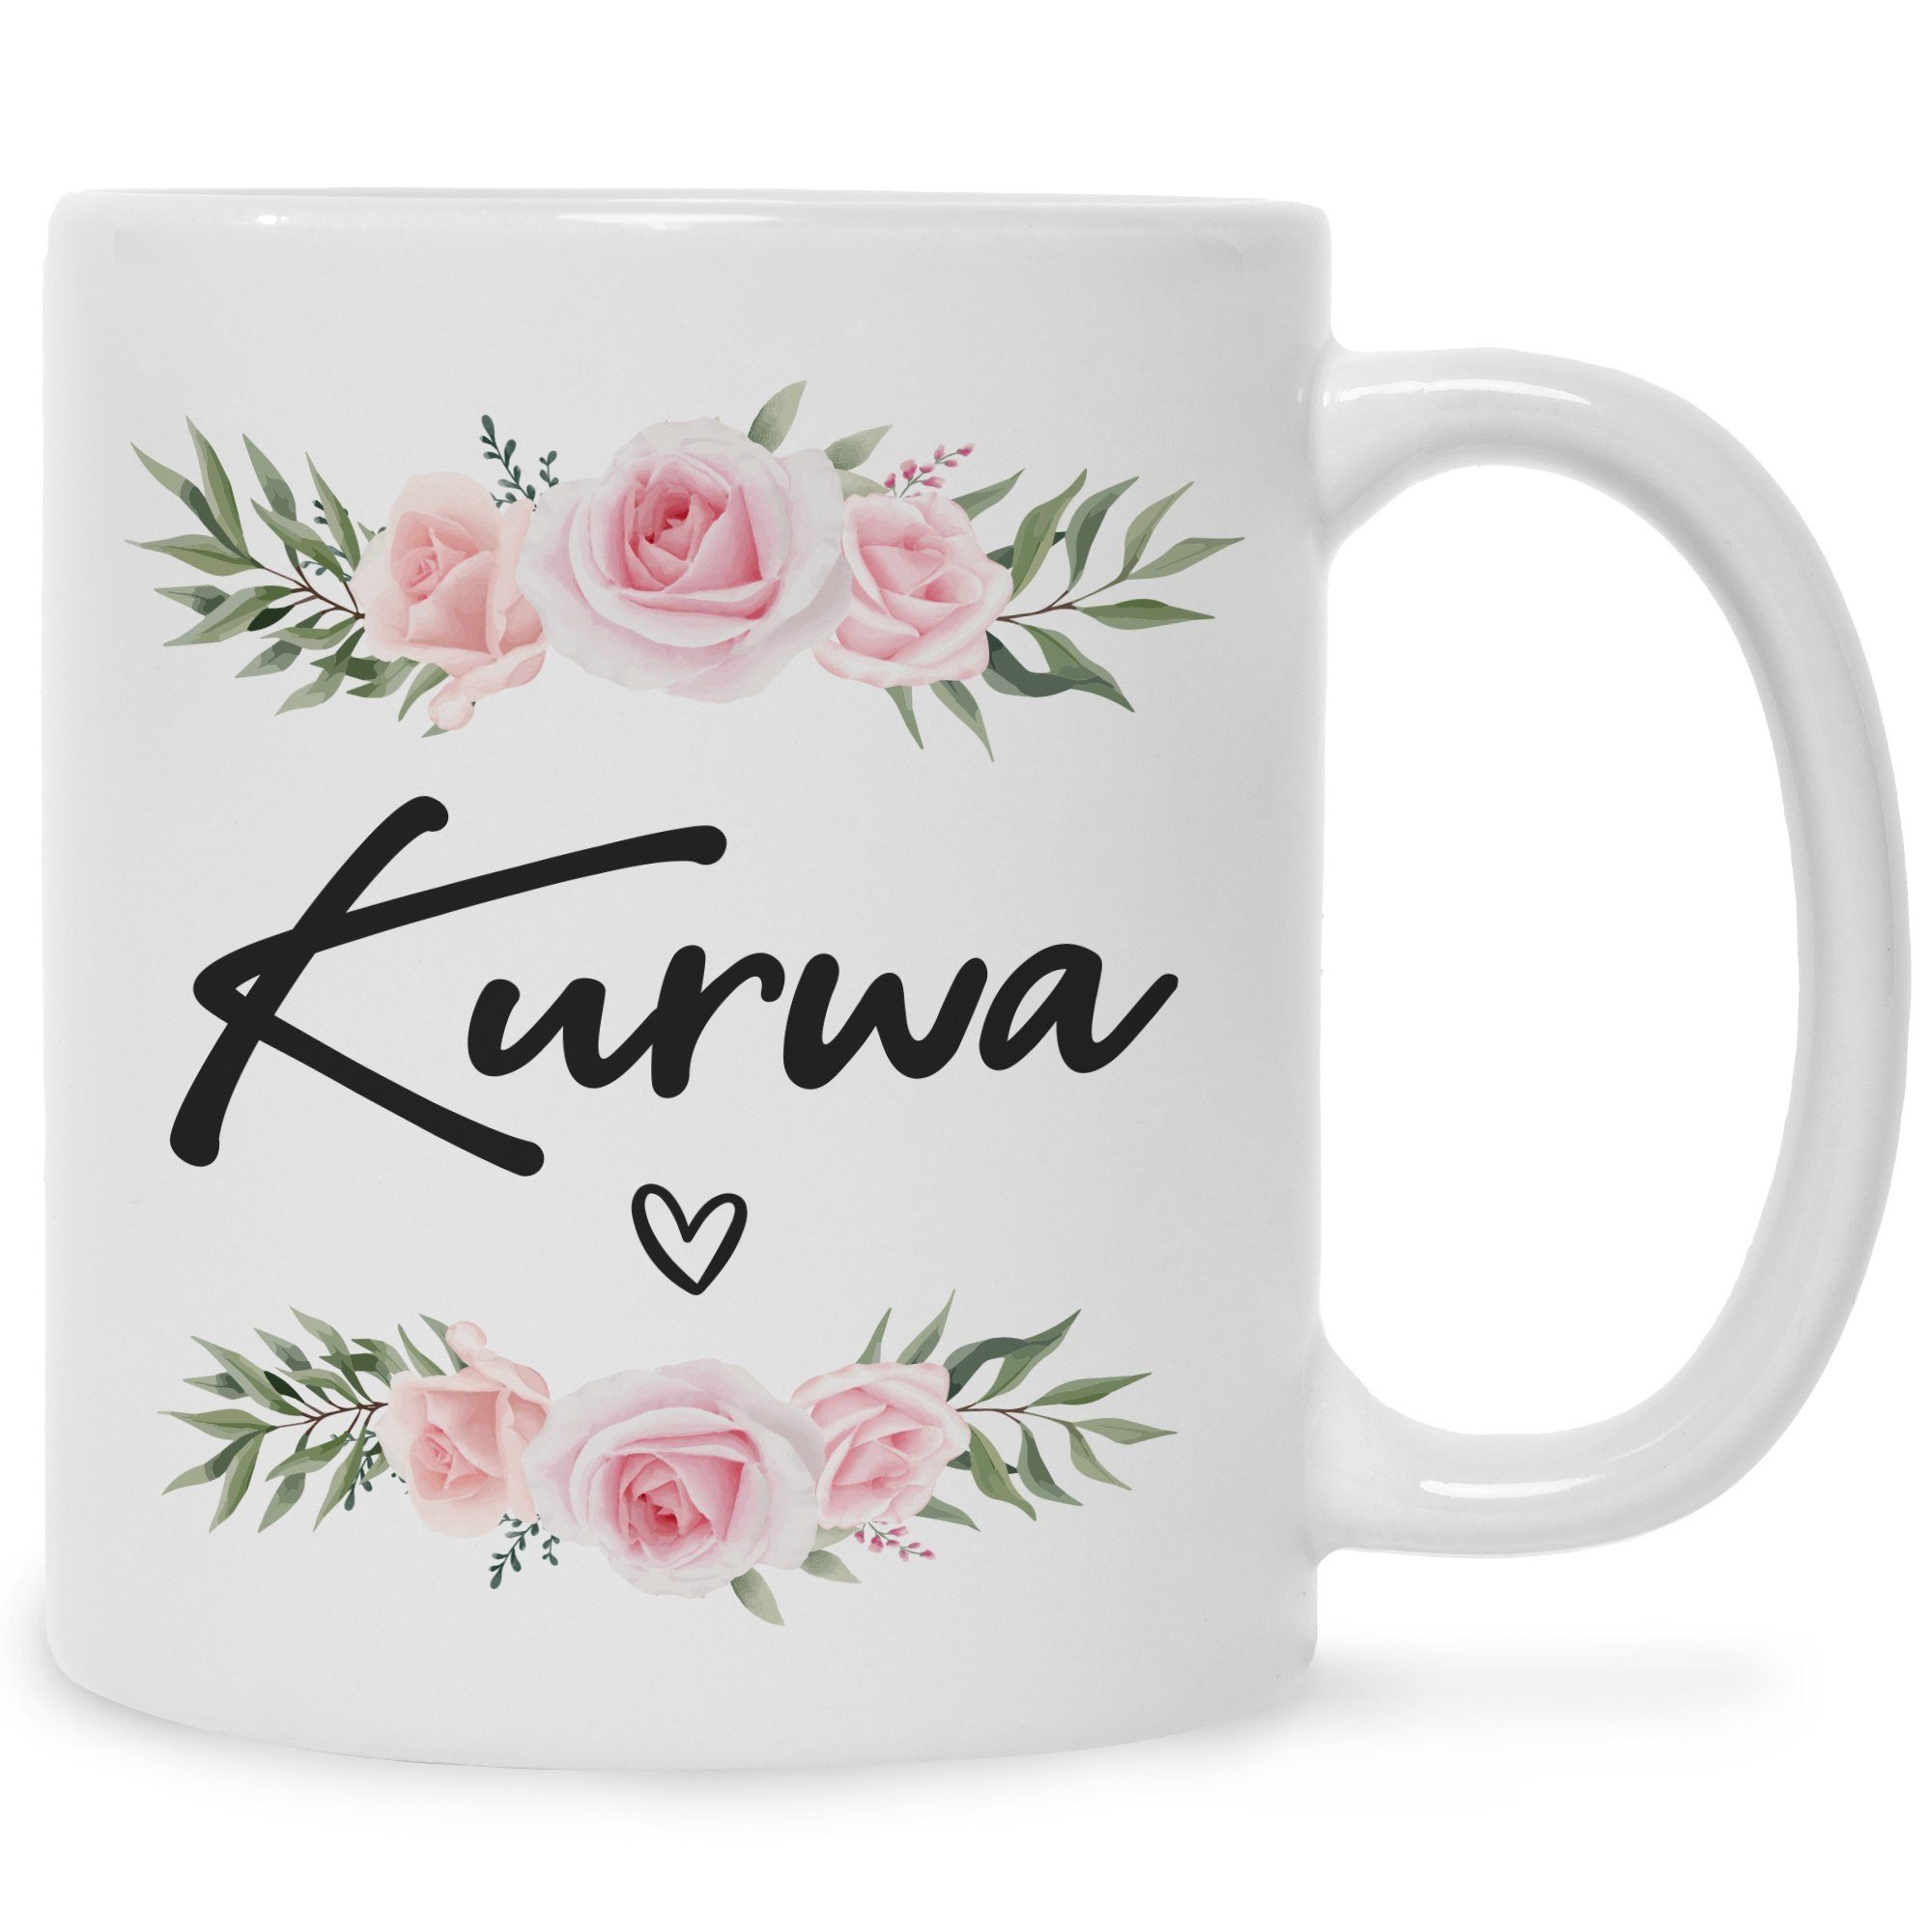 GRAVURZEILE Tasse GRAVURZEILE Tasse mit Spruch - Kurwa - Lustiges Geschenk für Freunde - Geschenk für Frauen & Männer - Geschenk für Sie & Ihn - Kaffeetasse Kaffeebecher Teetasse Weiß